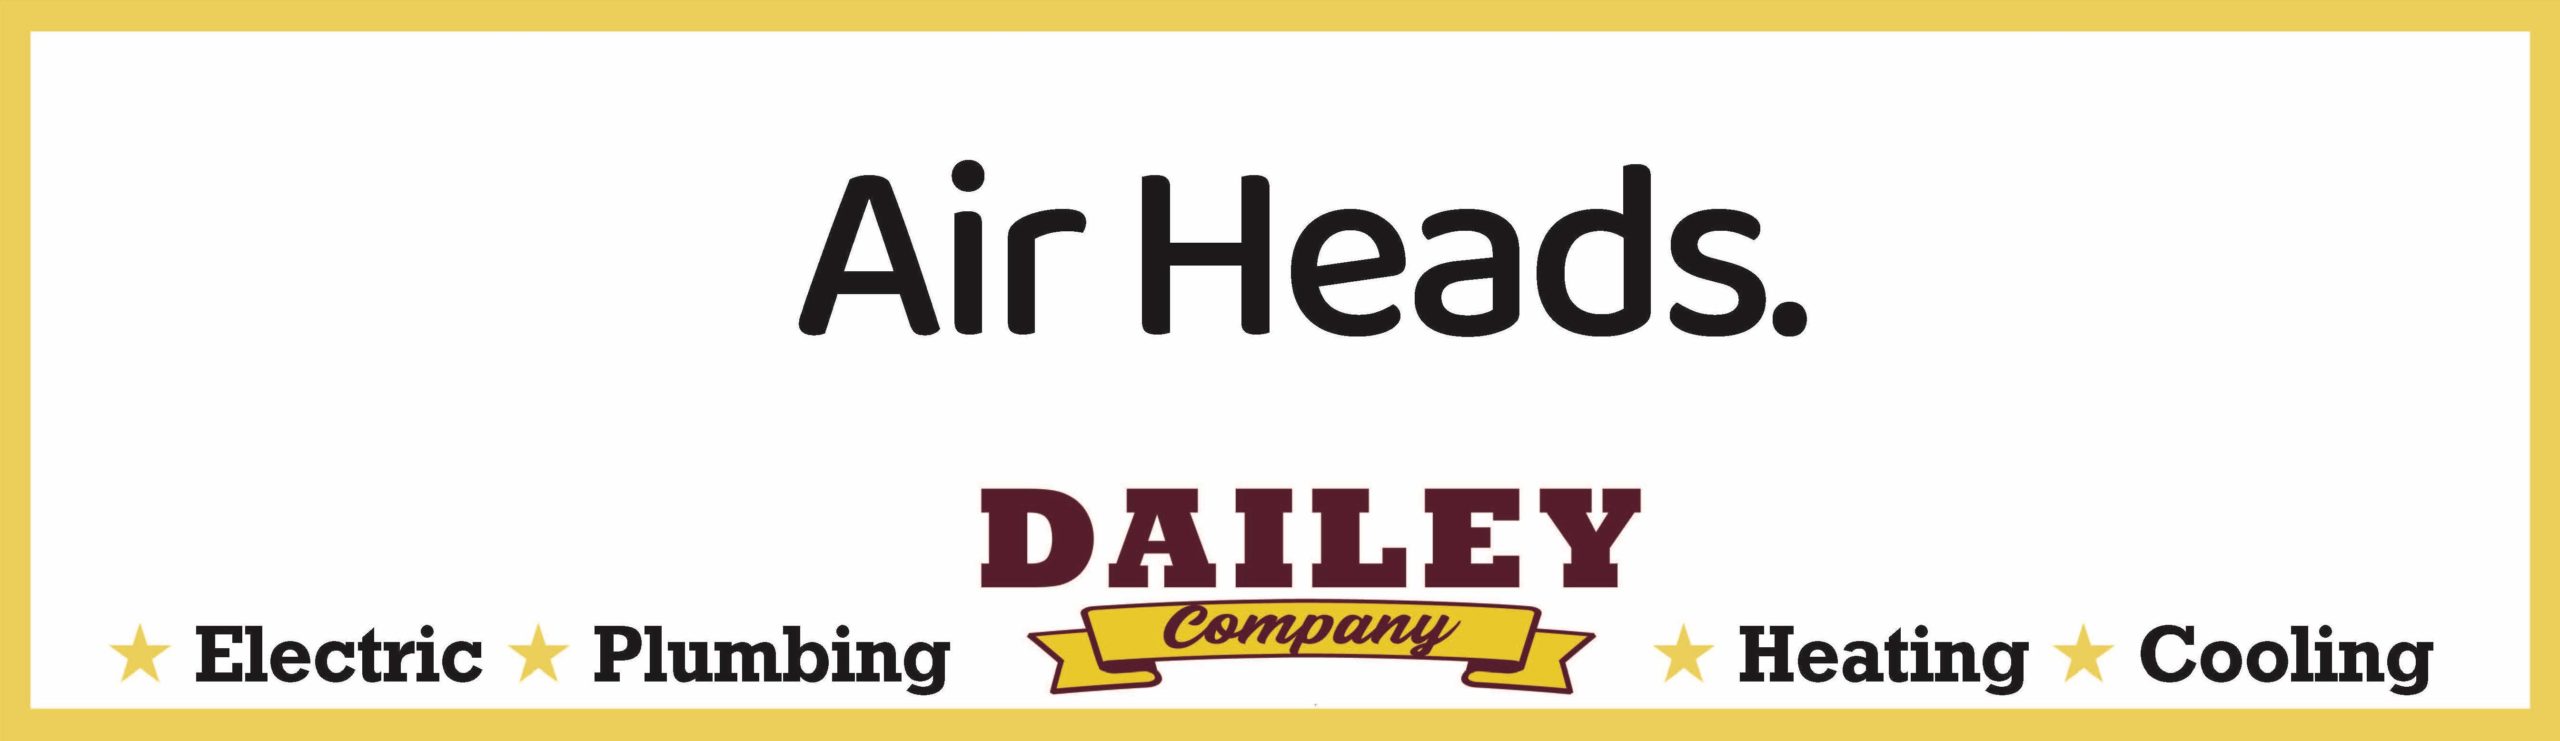 Dailey - Air Heads